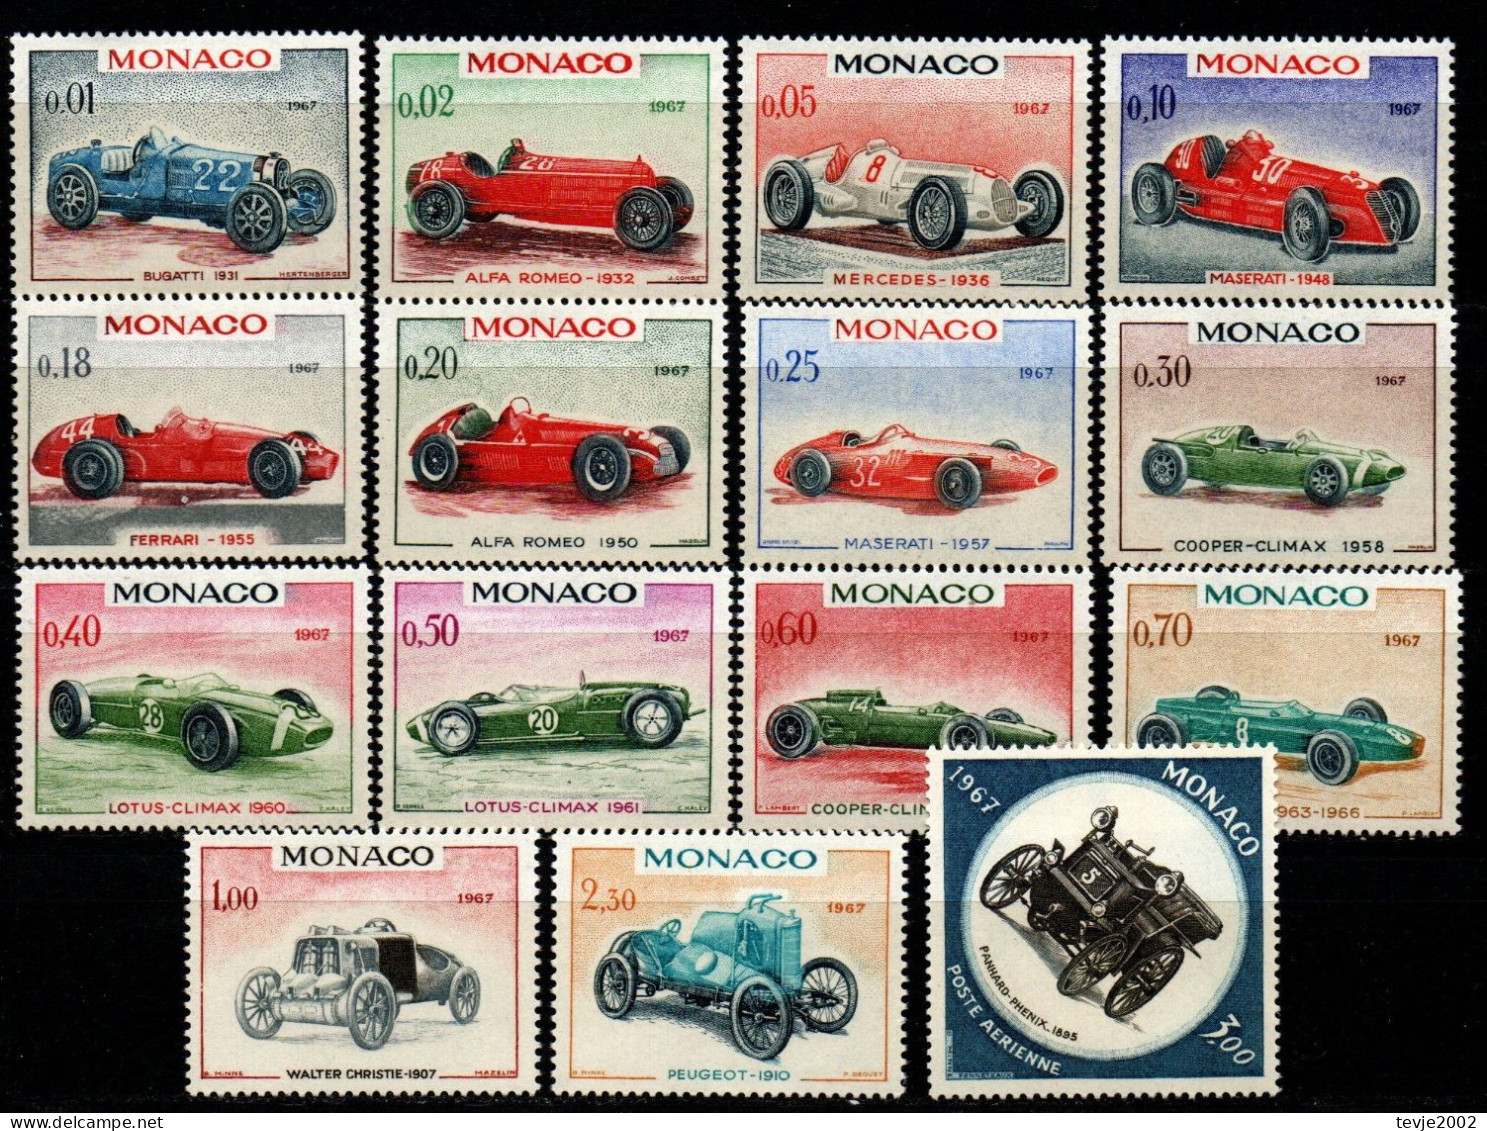 Monaco 1965 - Mi.Nr. 848 - 862 - Postfrisch MNH - Motorsport - Automovilismo